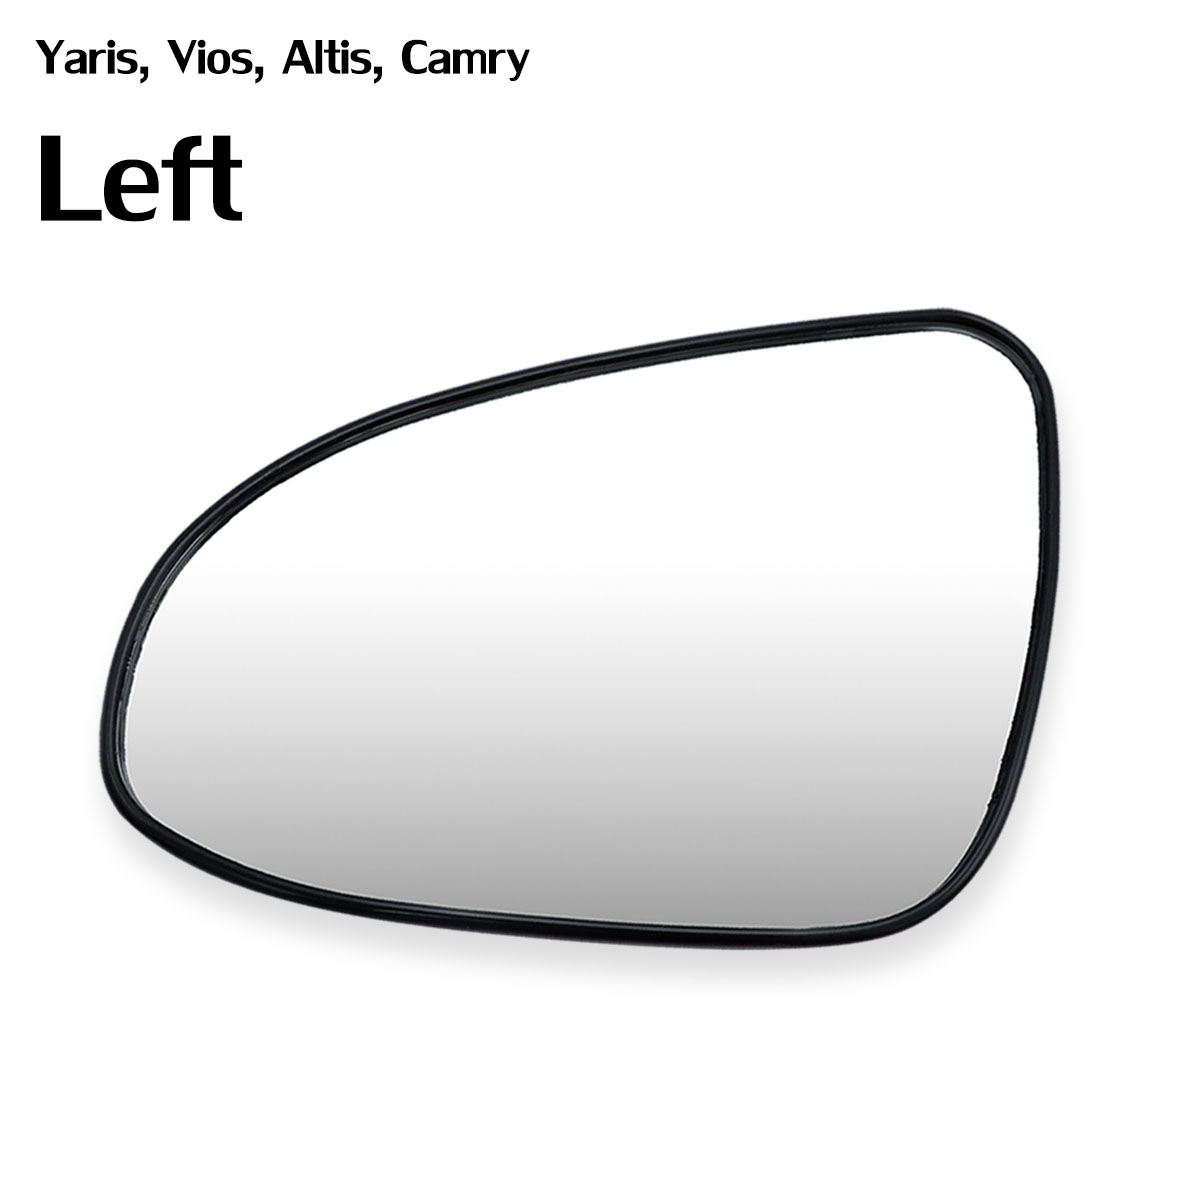 เนื้อเลนส์กระจก ข้าง ซ้าย ใส่ Toyota Vios Altis Yaris Camry ปี 2014 - 2019 LH Wing Side Door Mirror Glass Len Yaris Vios Altis Camry Toyota มีบริการเก็บเงินปลายทาง